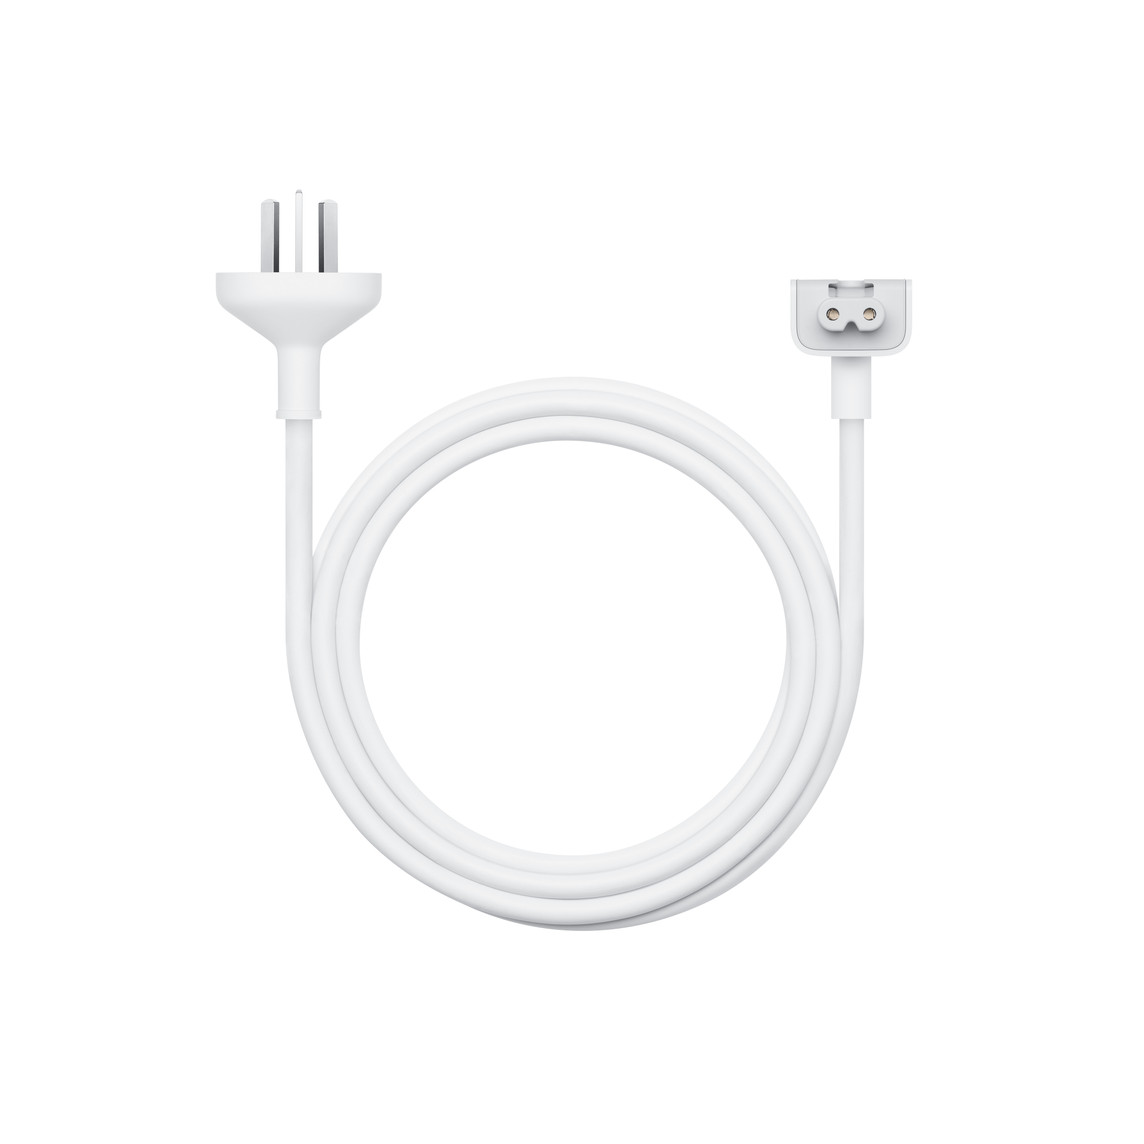 1.8 米电源适配器延长线缆是交流电延长线，可延长你的 Apple 电源适配器的线缆长度。